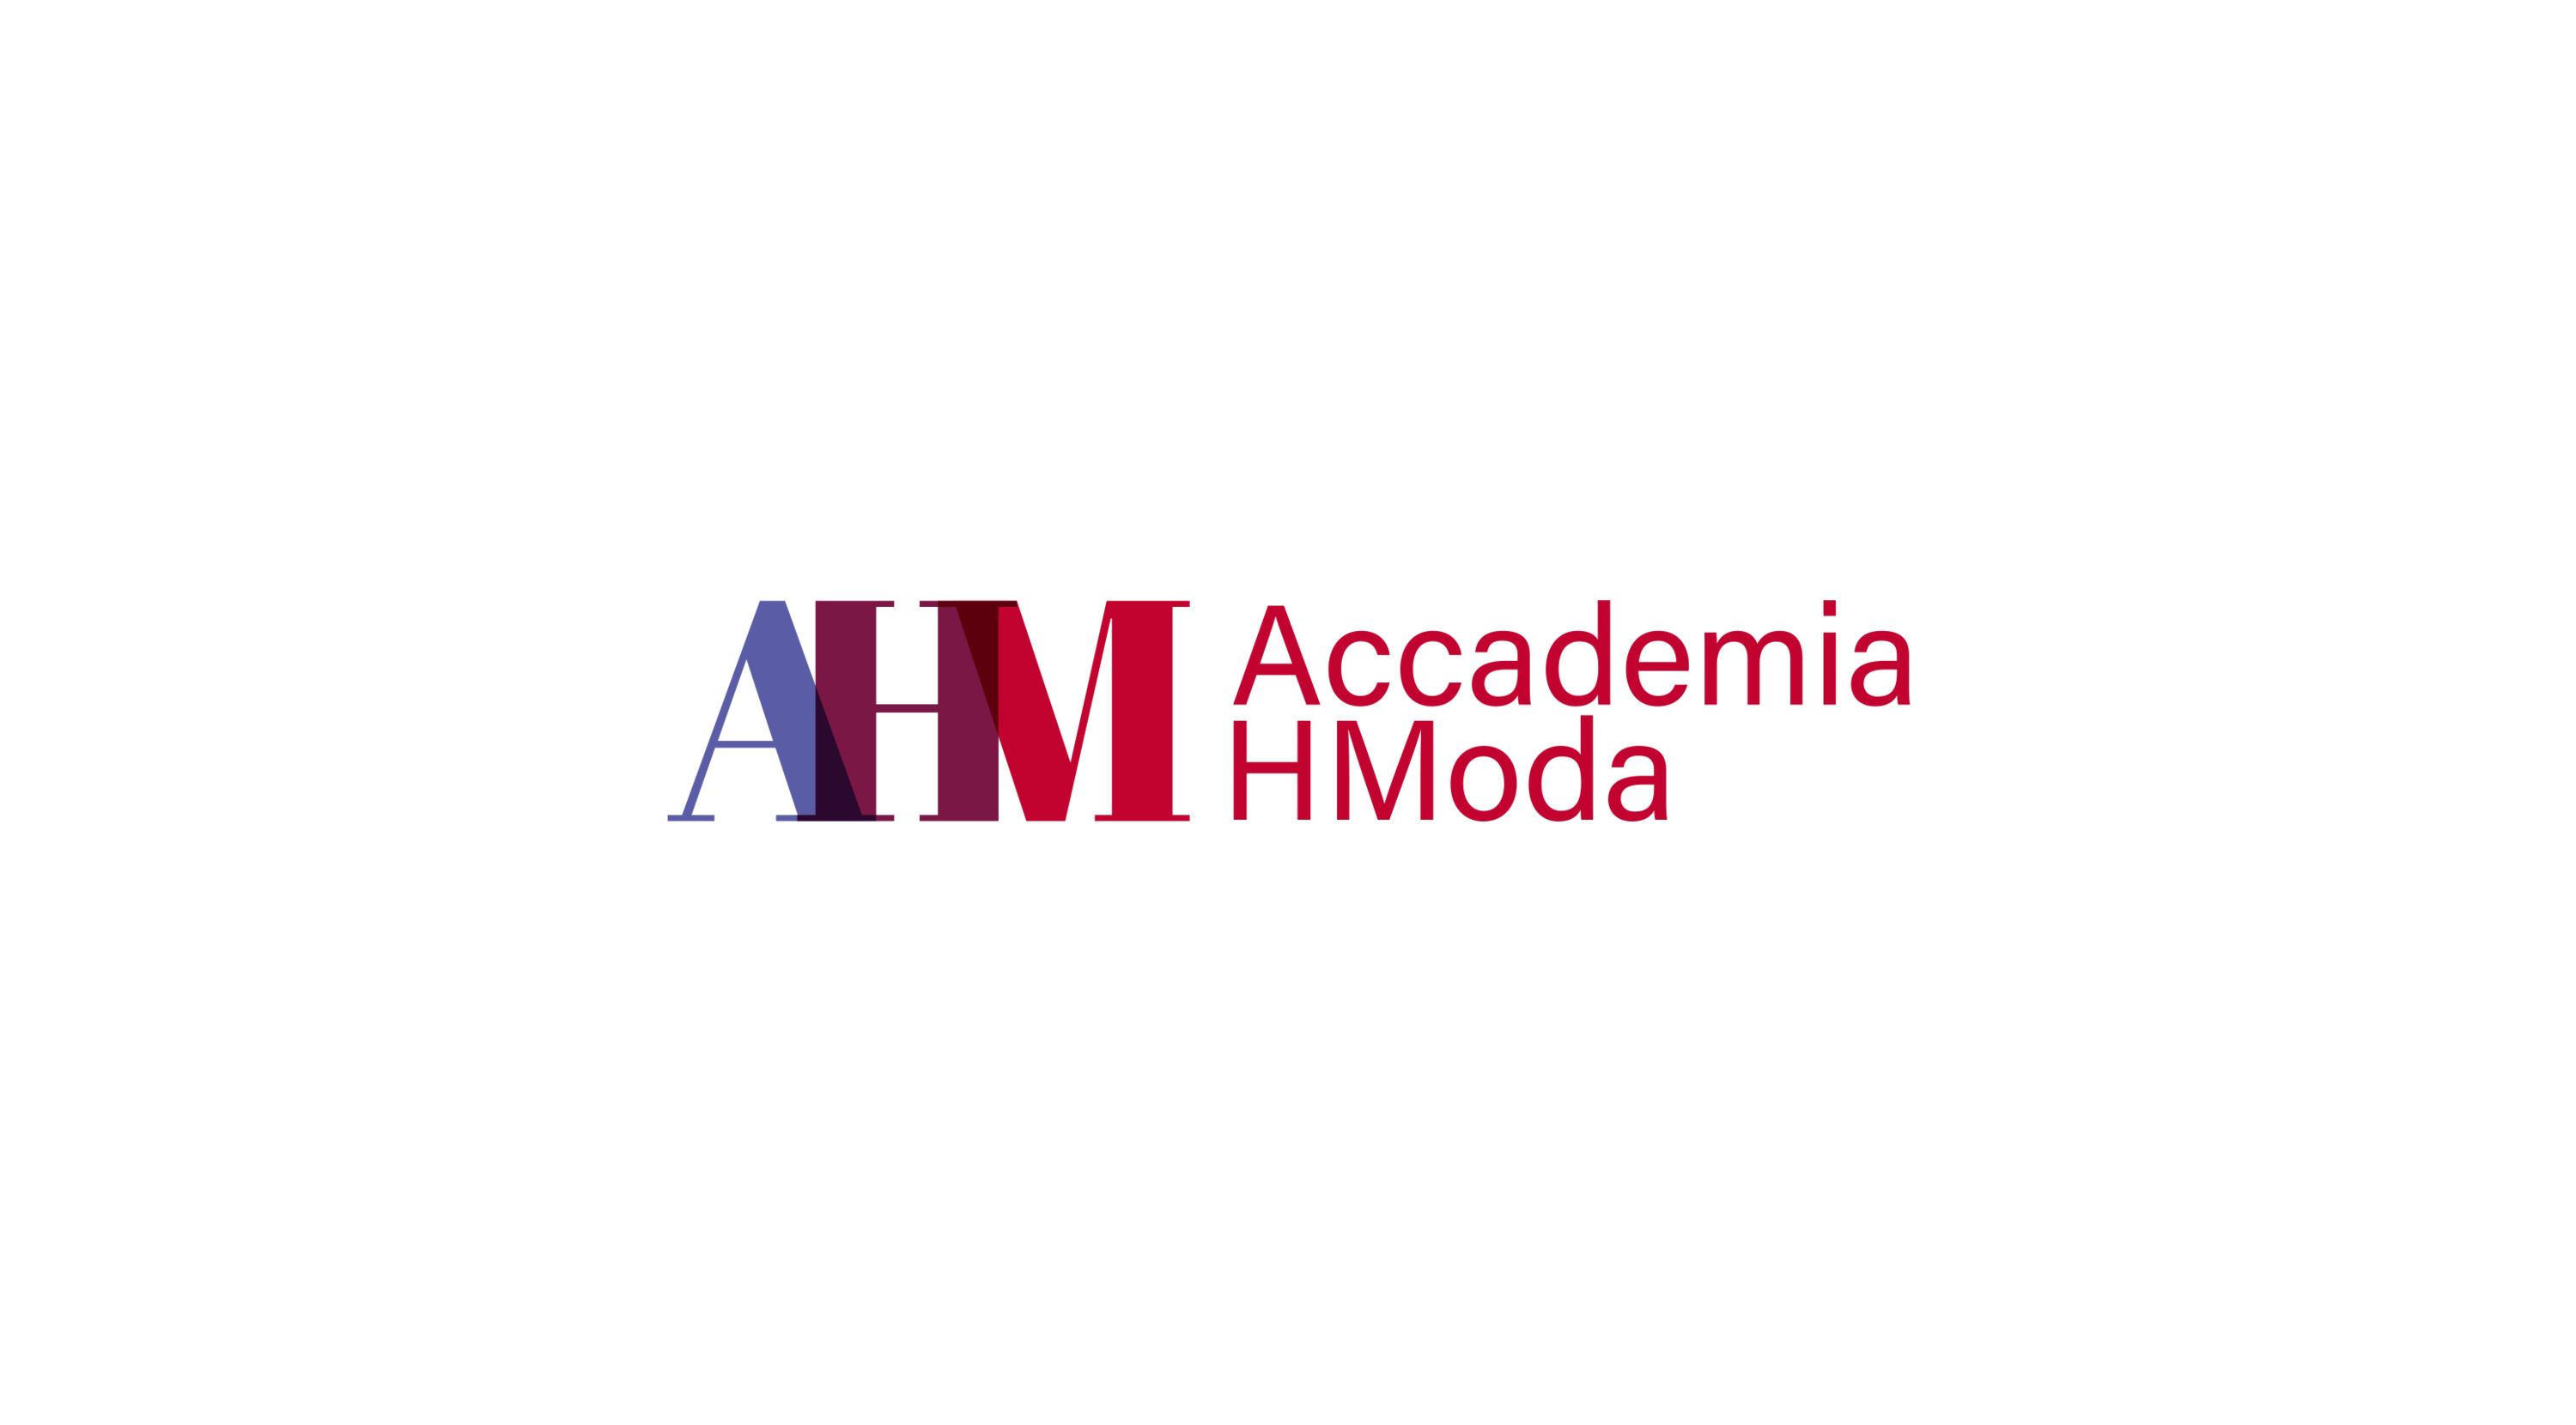 Accademia HModa